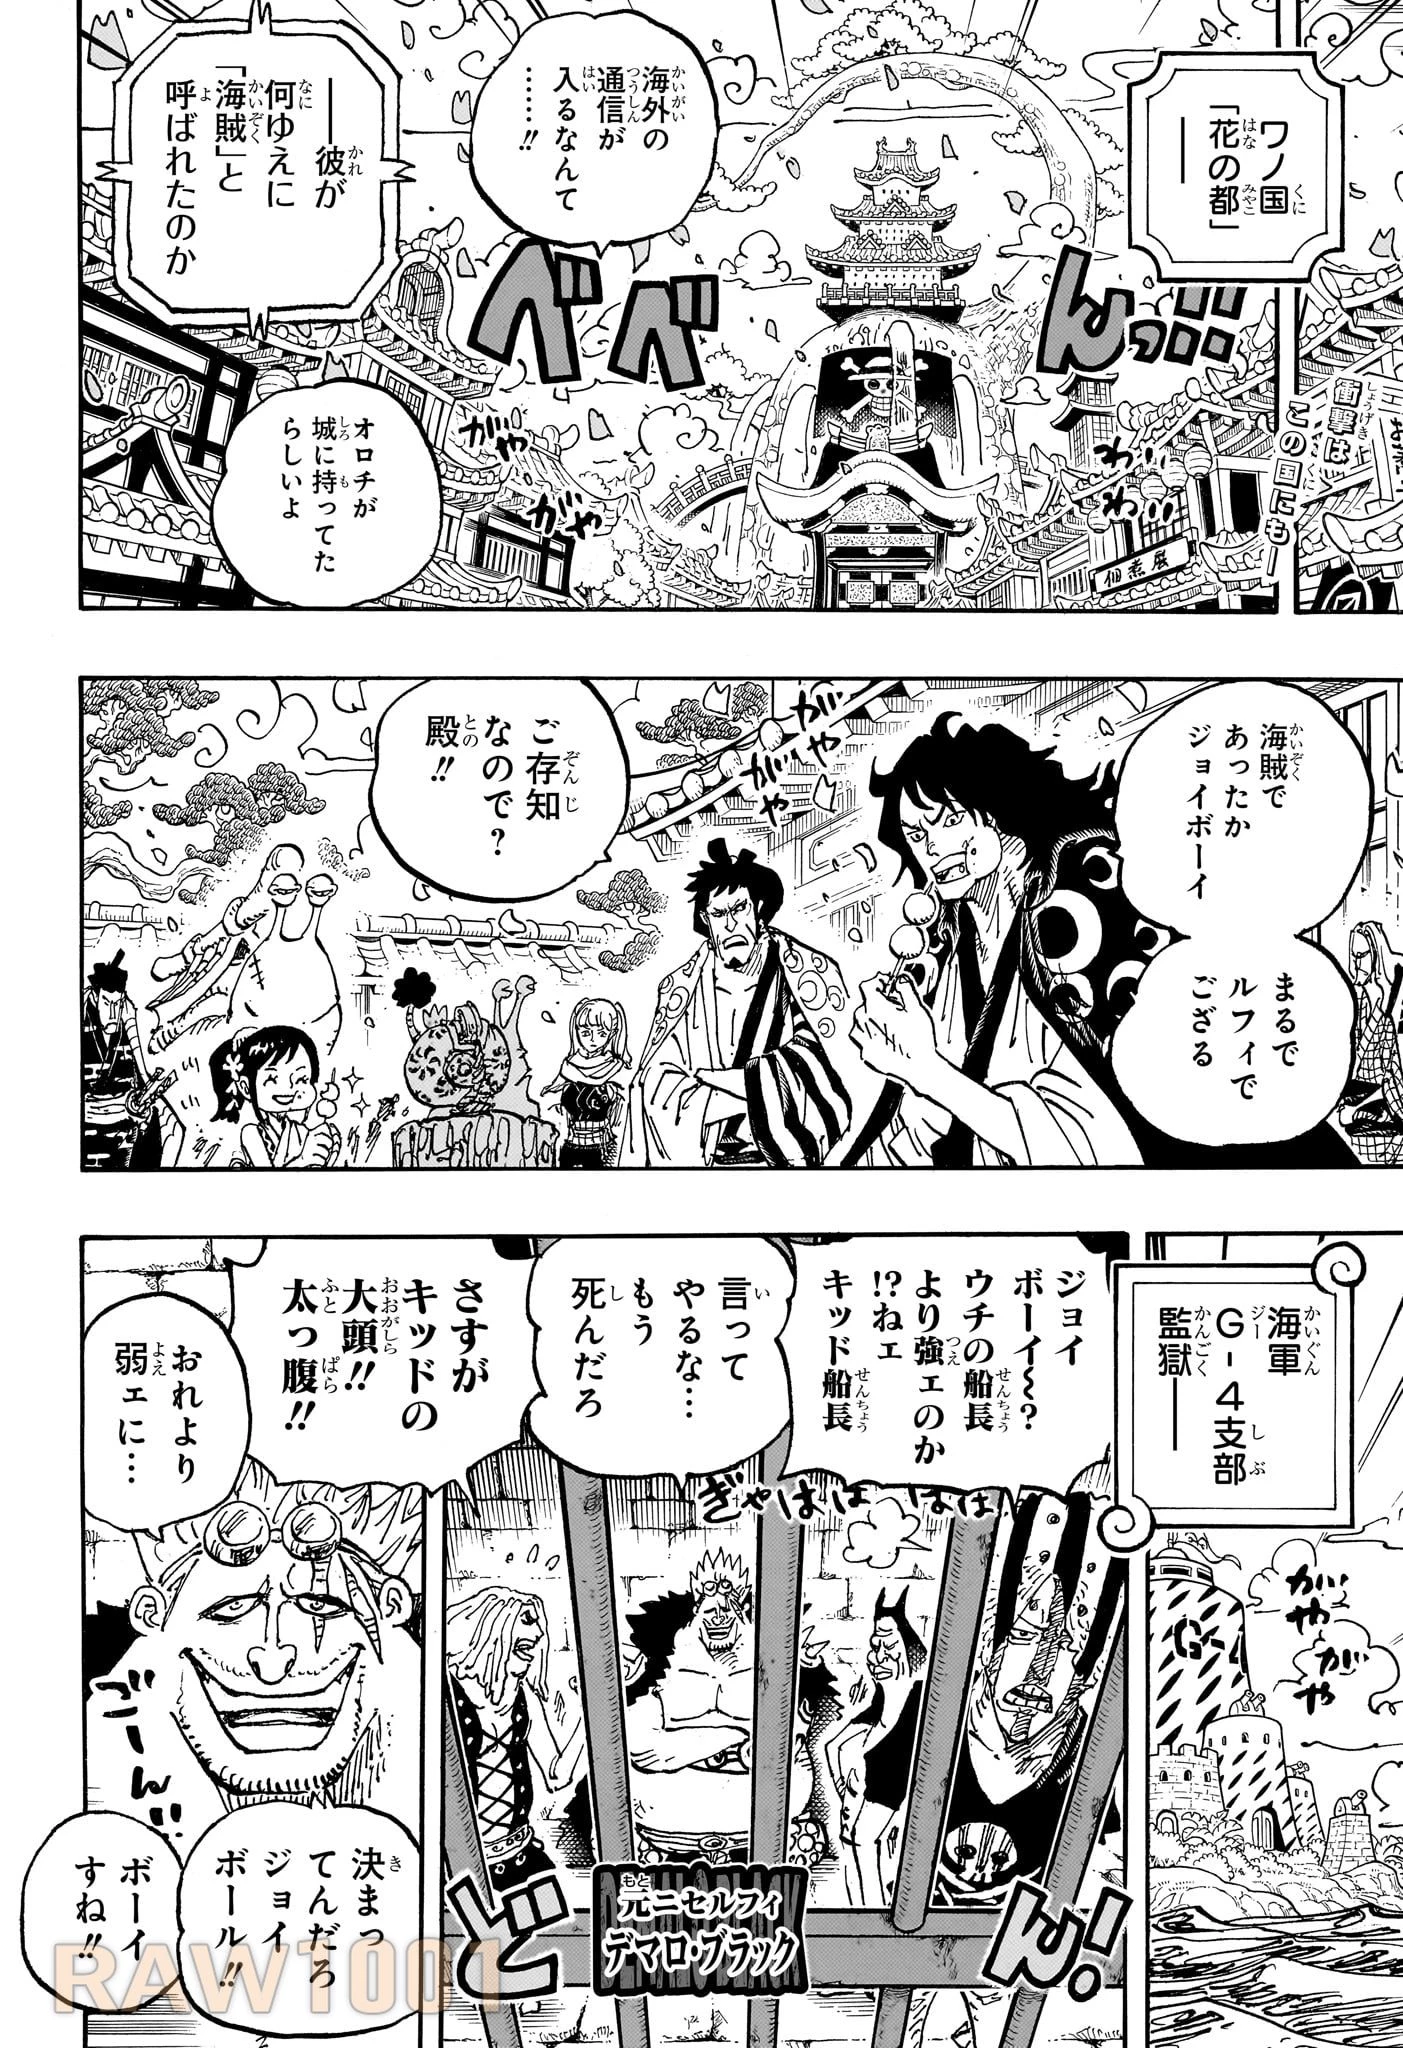 ワンピース 第1115話 Raw - Mangakoma - 漫画koma - 漫画raw